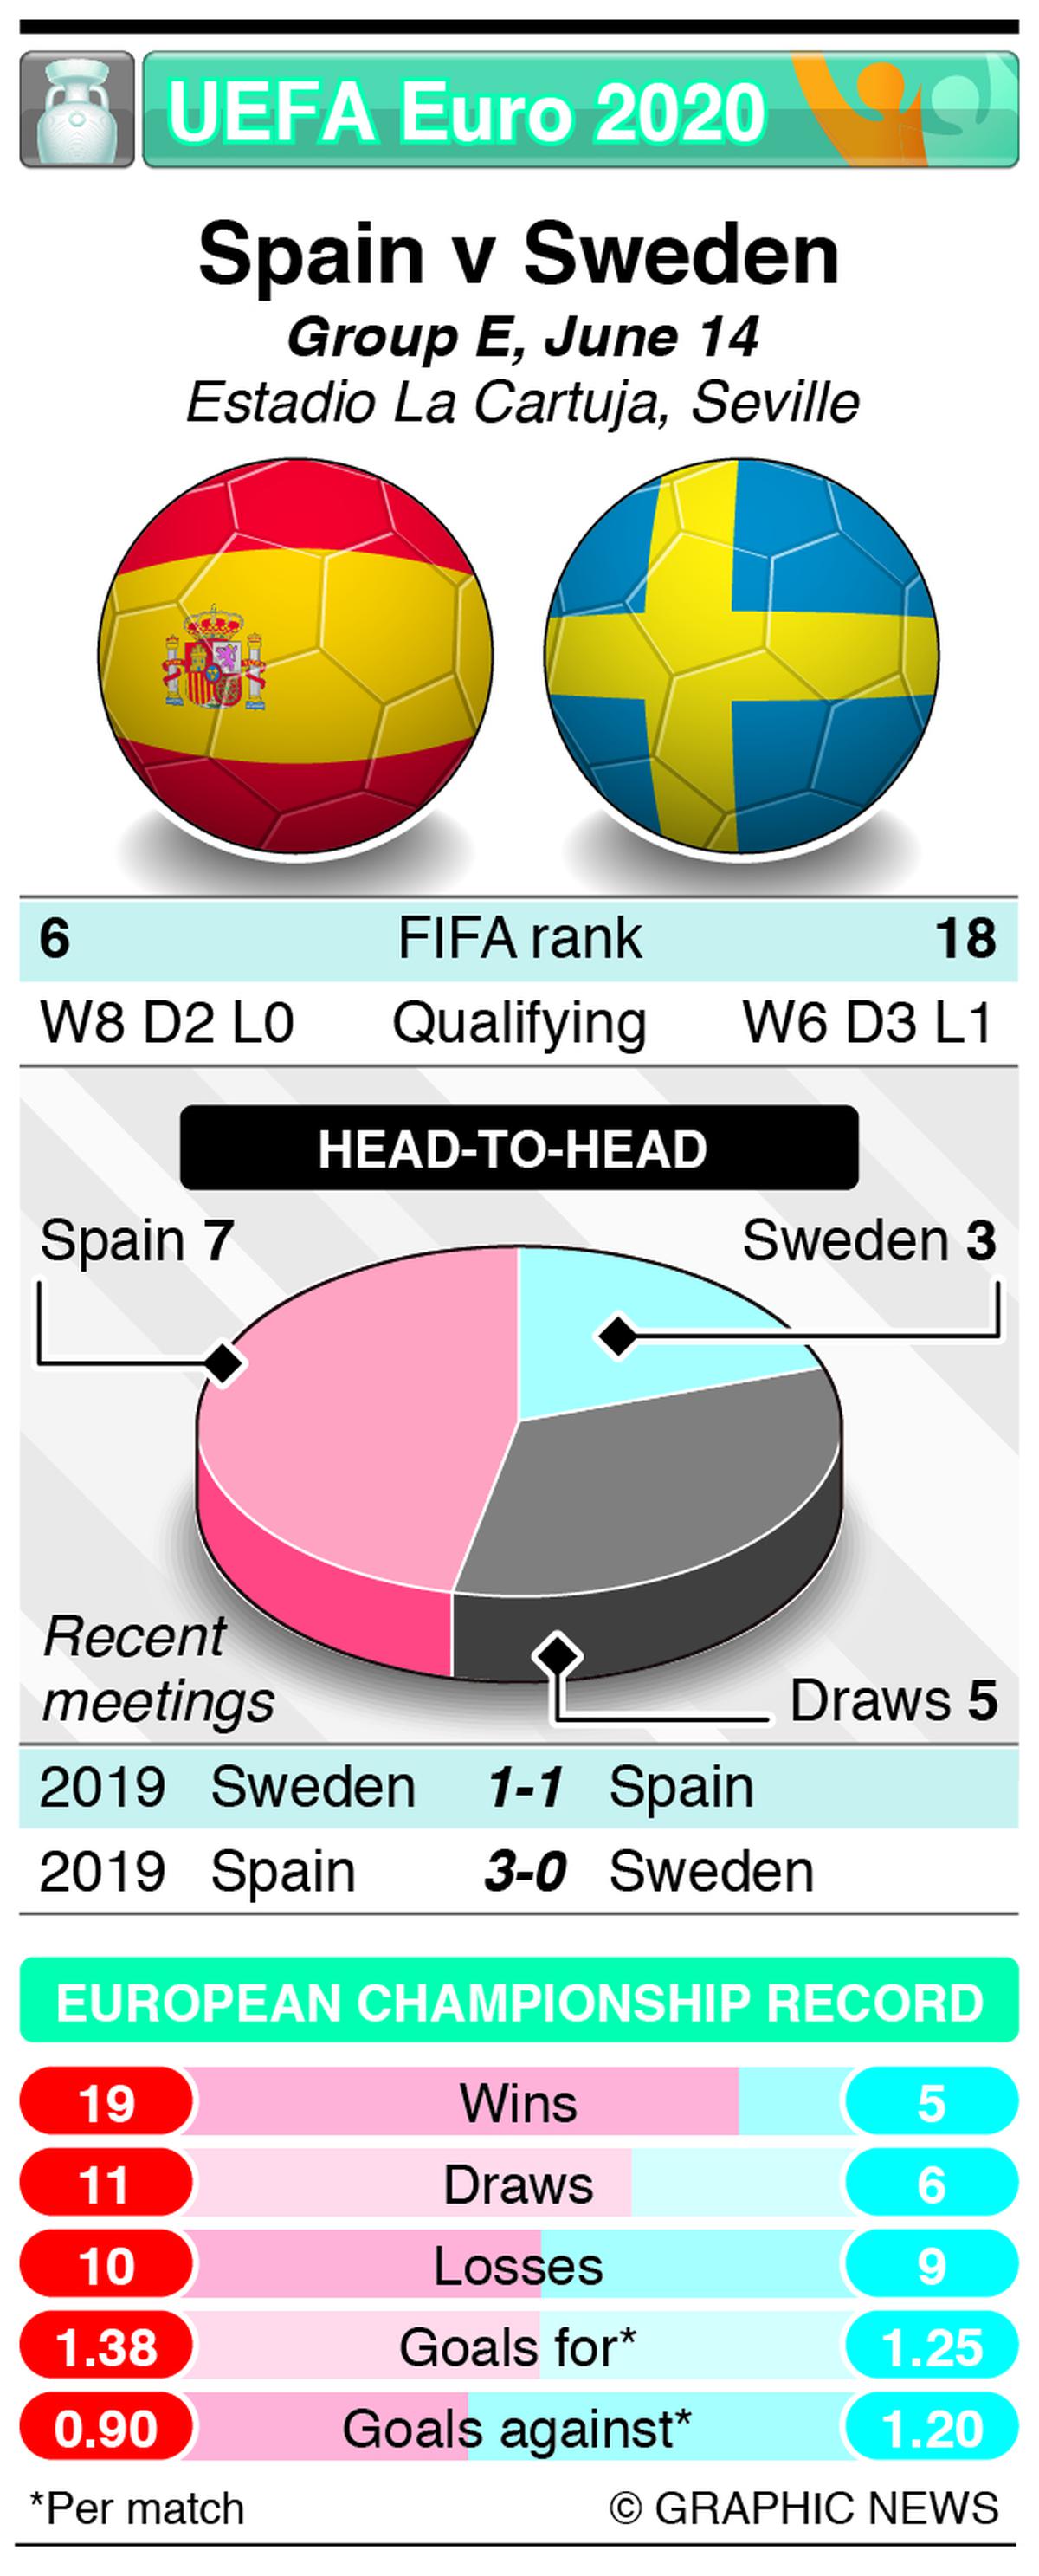 Spain vs sweden lineup